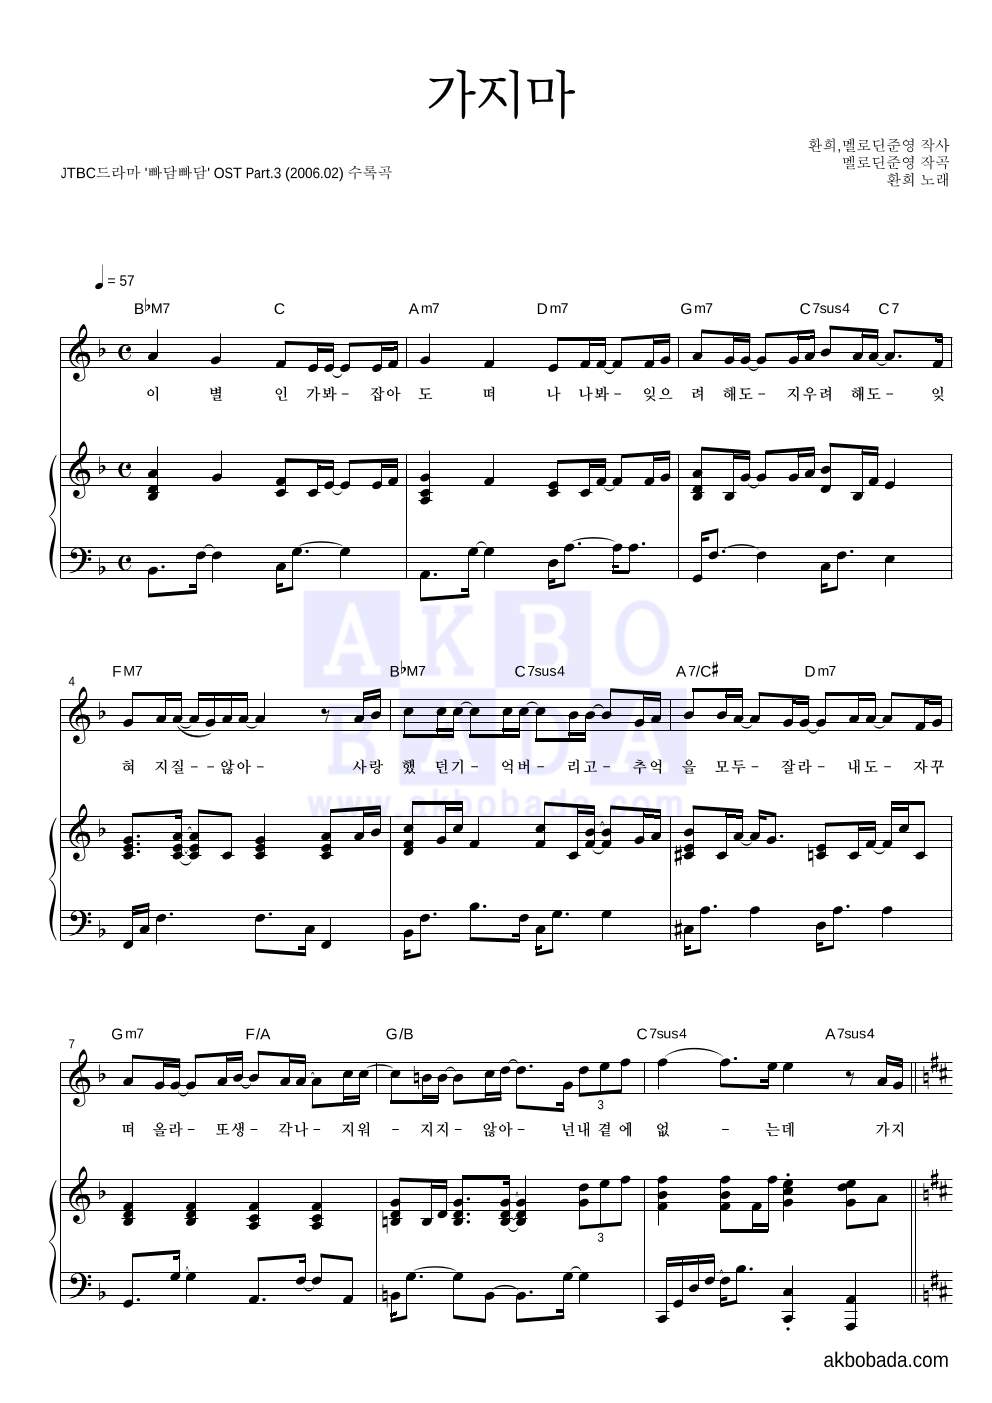 환희 - 가지마 피아노 3단 악보 